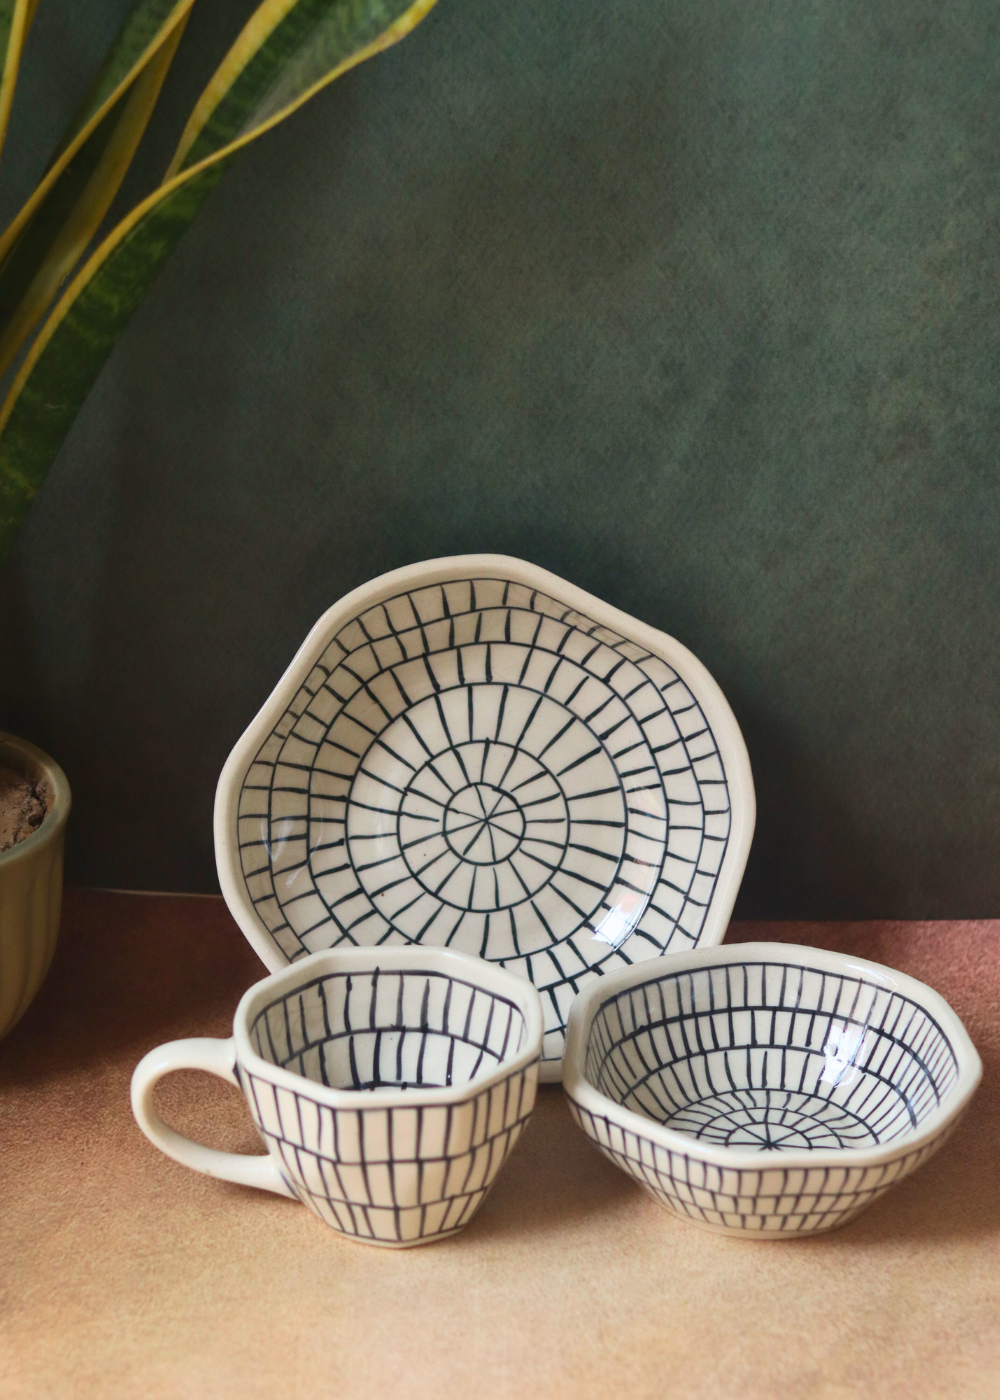 Zebra designed bowls & coffee mug